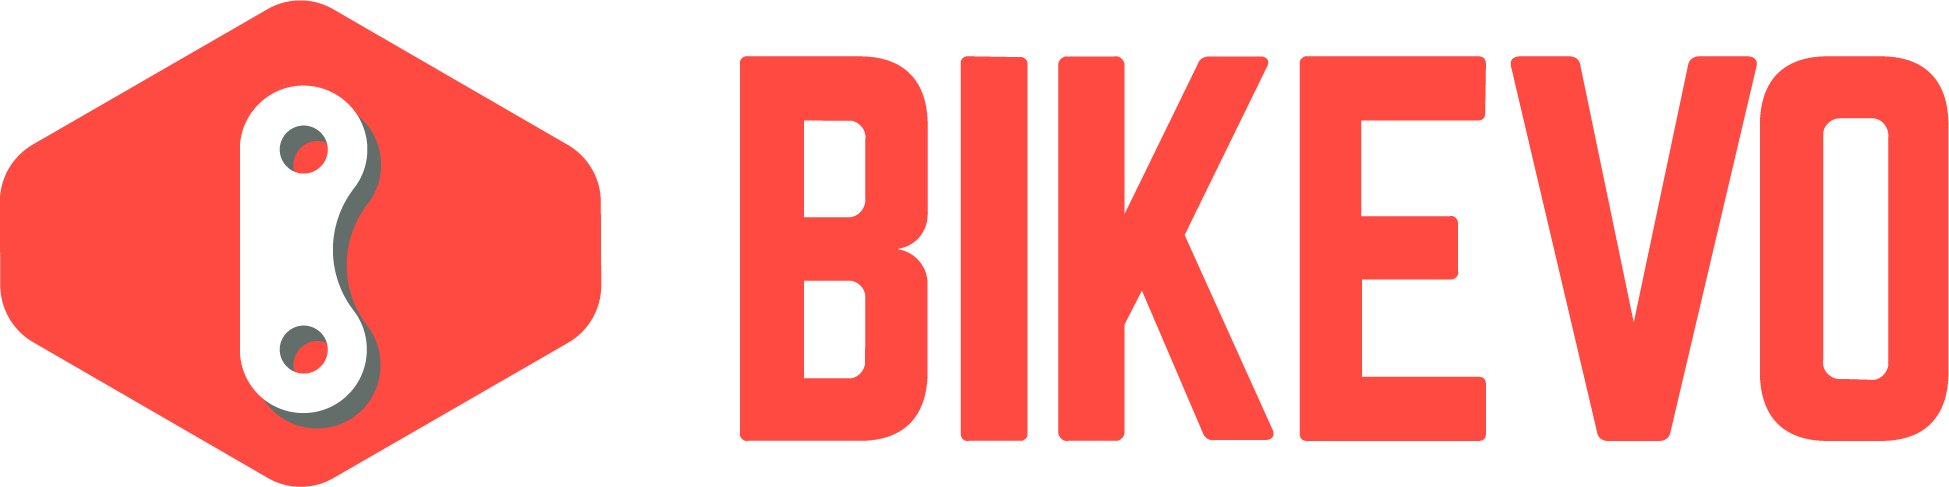 Bikevo